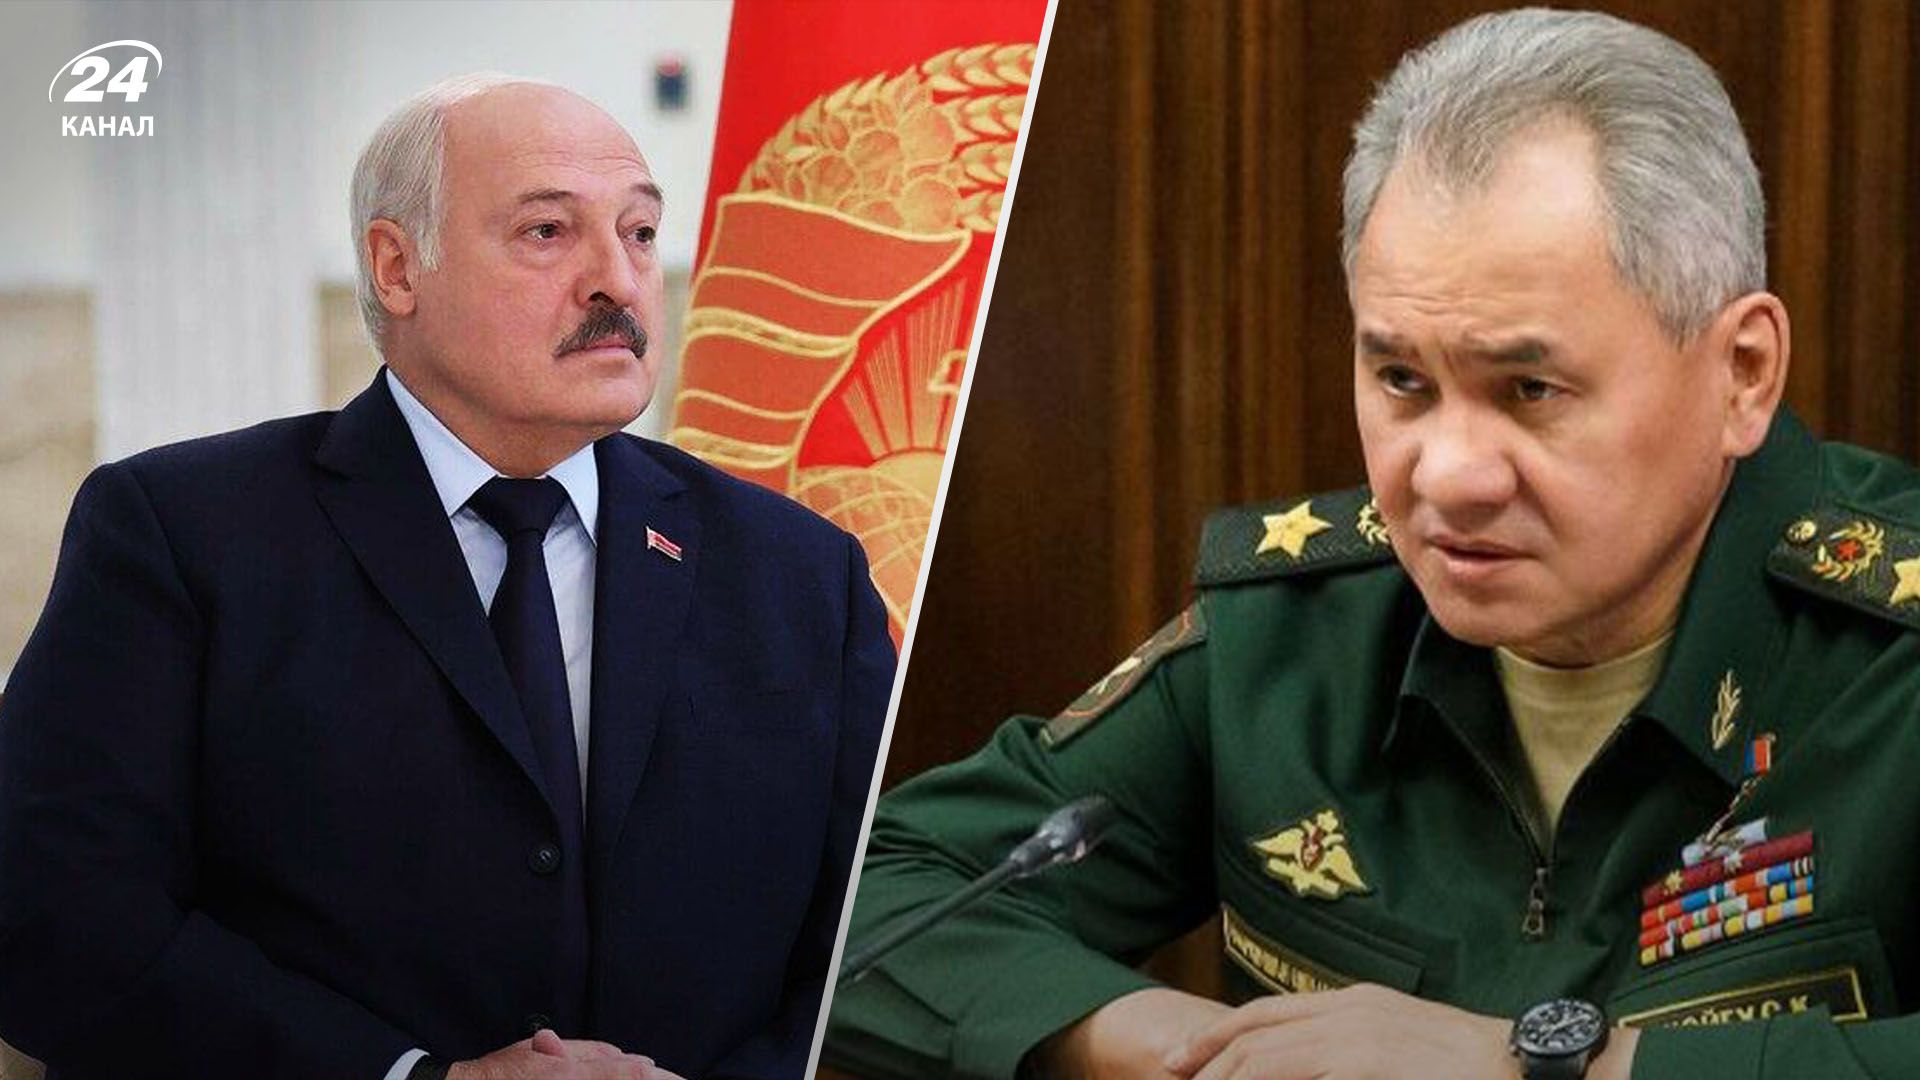 Шойгу неожиданно прилетел в Беларусь: Лукашенко просит у России защиты - 24 Канал